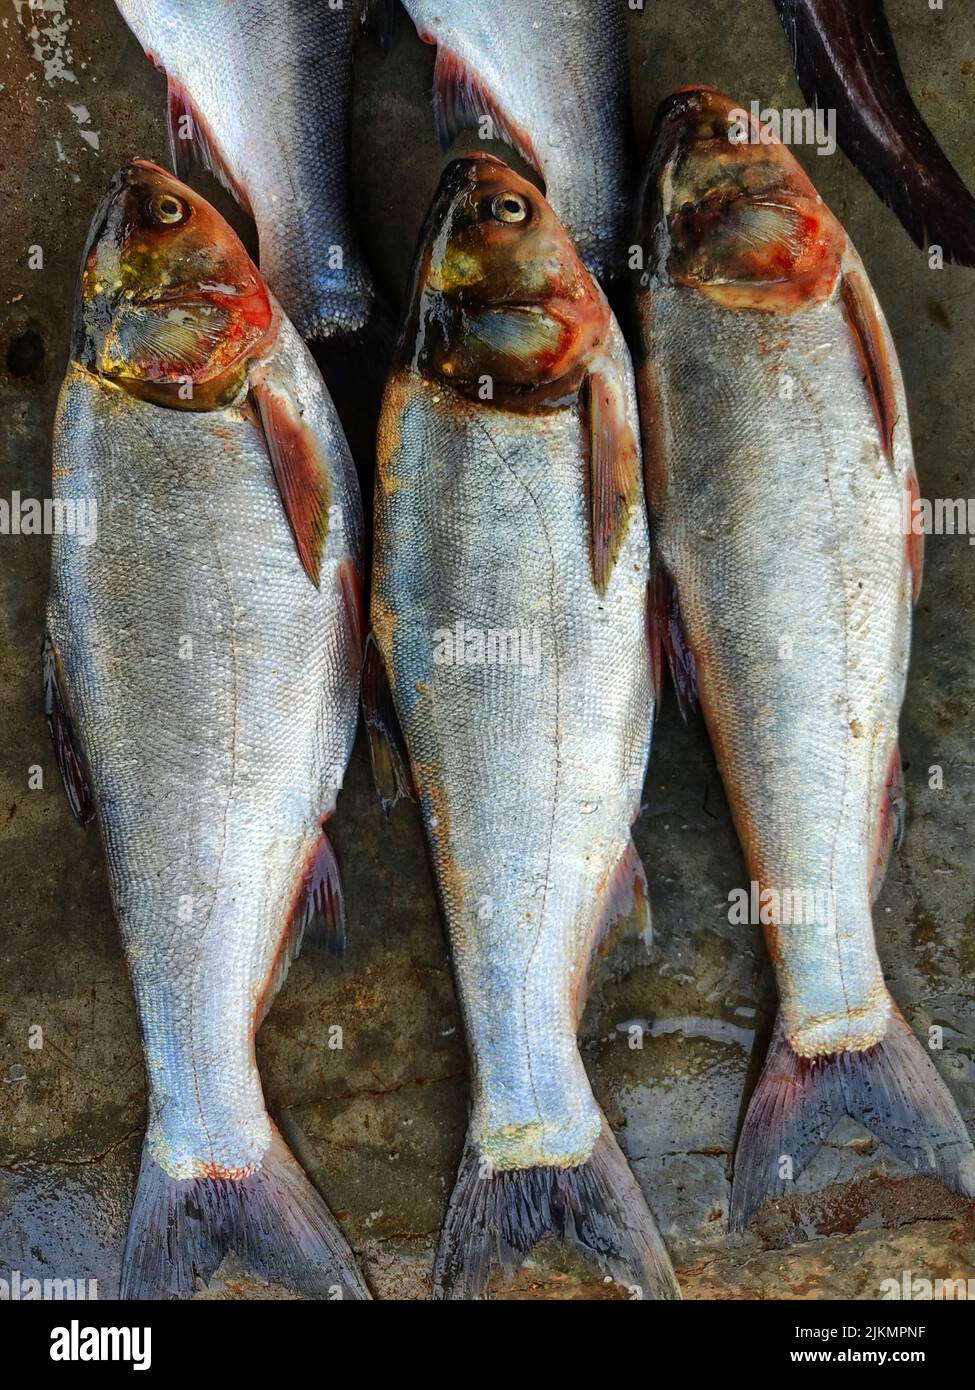 Silberkarpfen Fisch in Reihe in indischen Fischmarkt zum Verkauf angeordnet Stockfoto